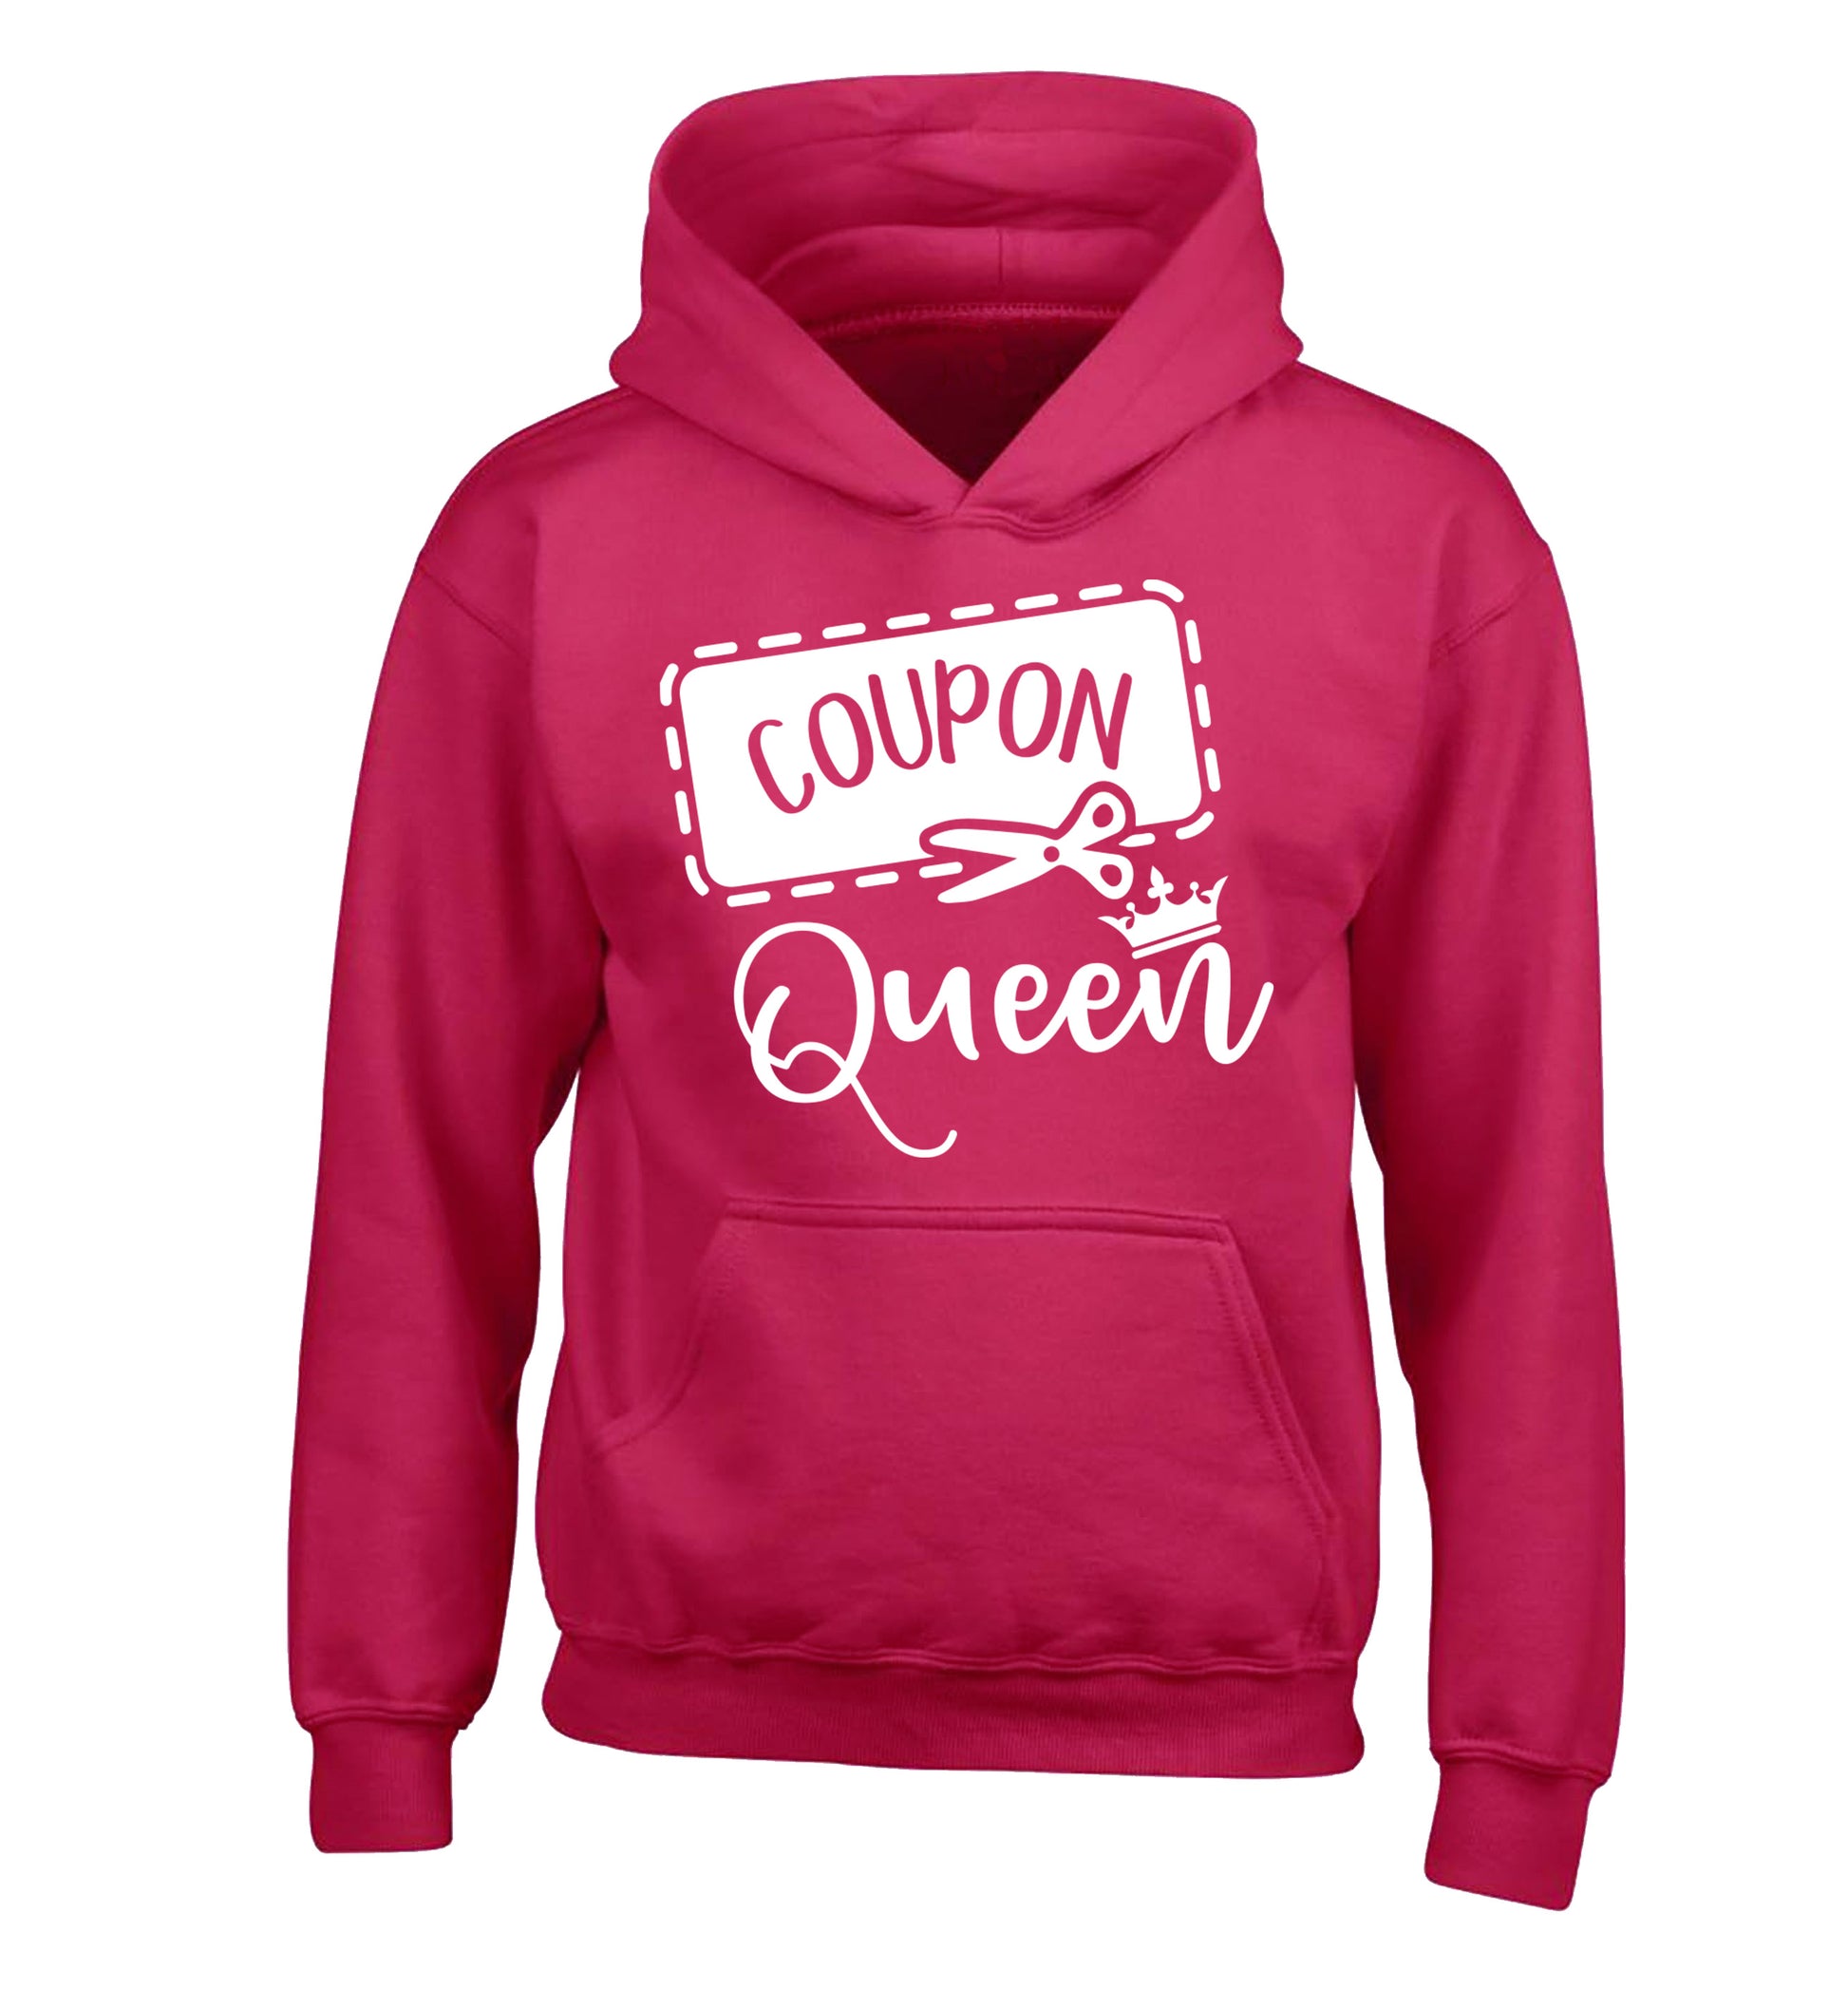 Coupon Queen children's pink hoodie 12-13 Years